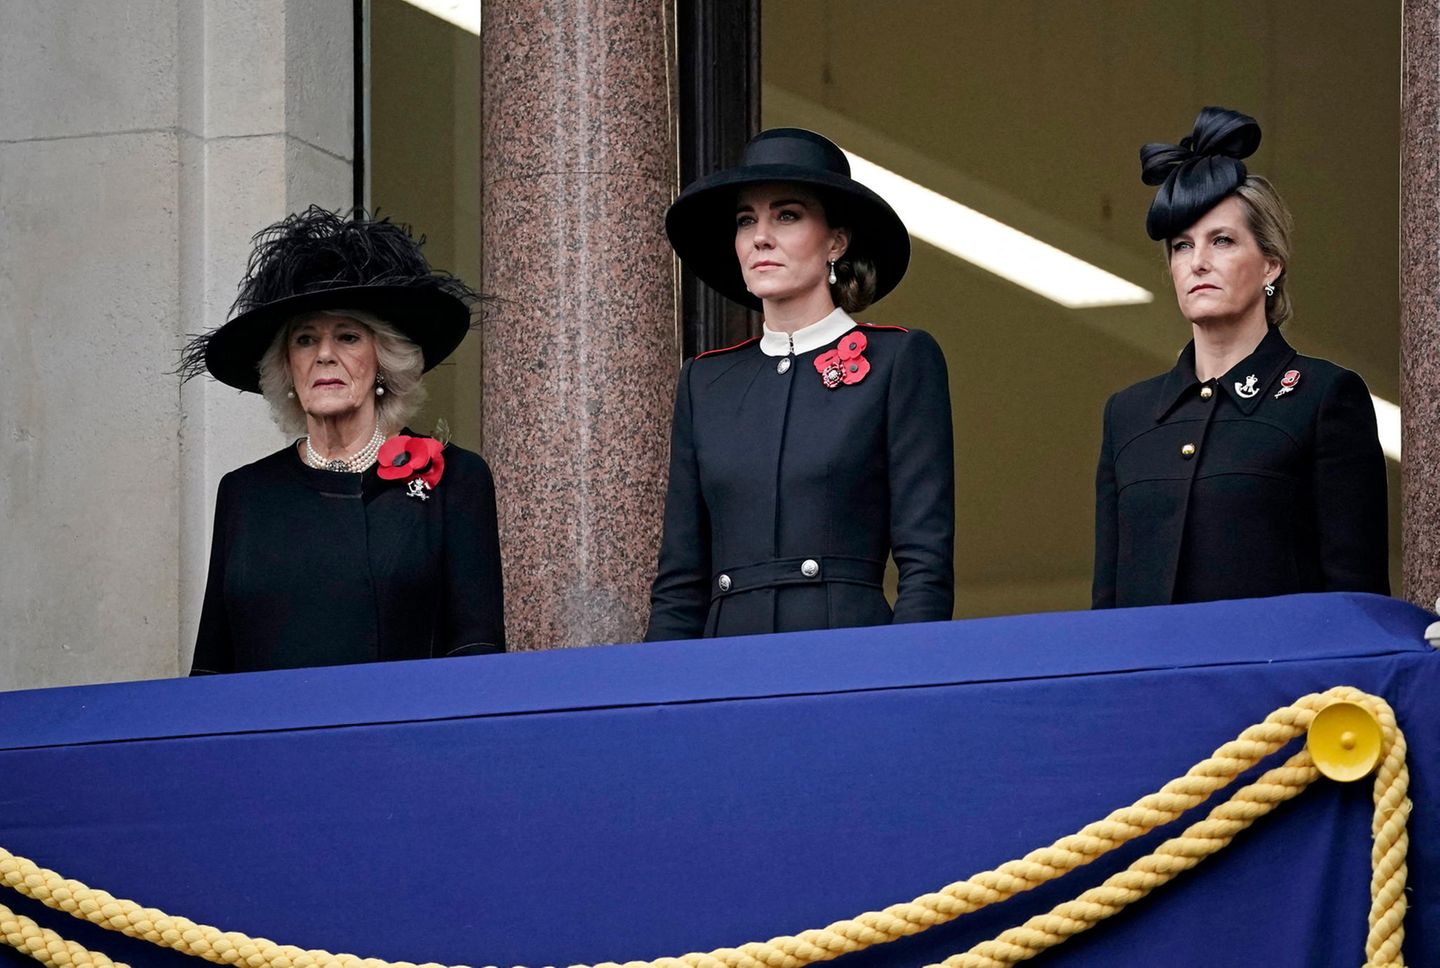 Auf dem Balkon des Auswärtigen Amtes stehen derweil Herzogin Camilla, Herzogin Catherine und Gräfin Sophie und beobachten die Parade. Kate kommt dabei eine wichtige Rolle zu, sie nimmt den Platz von Queen Elizabeth ein. Die Monarchin hatte erst kurz vorher ihre Teilnahme krankheitsbedingt abgesagt.